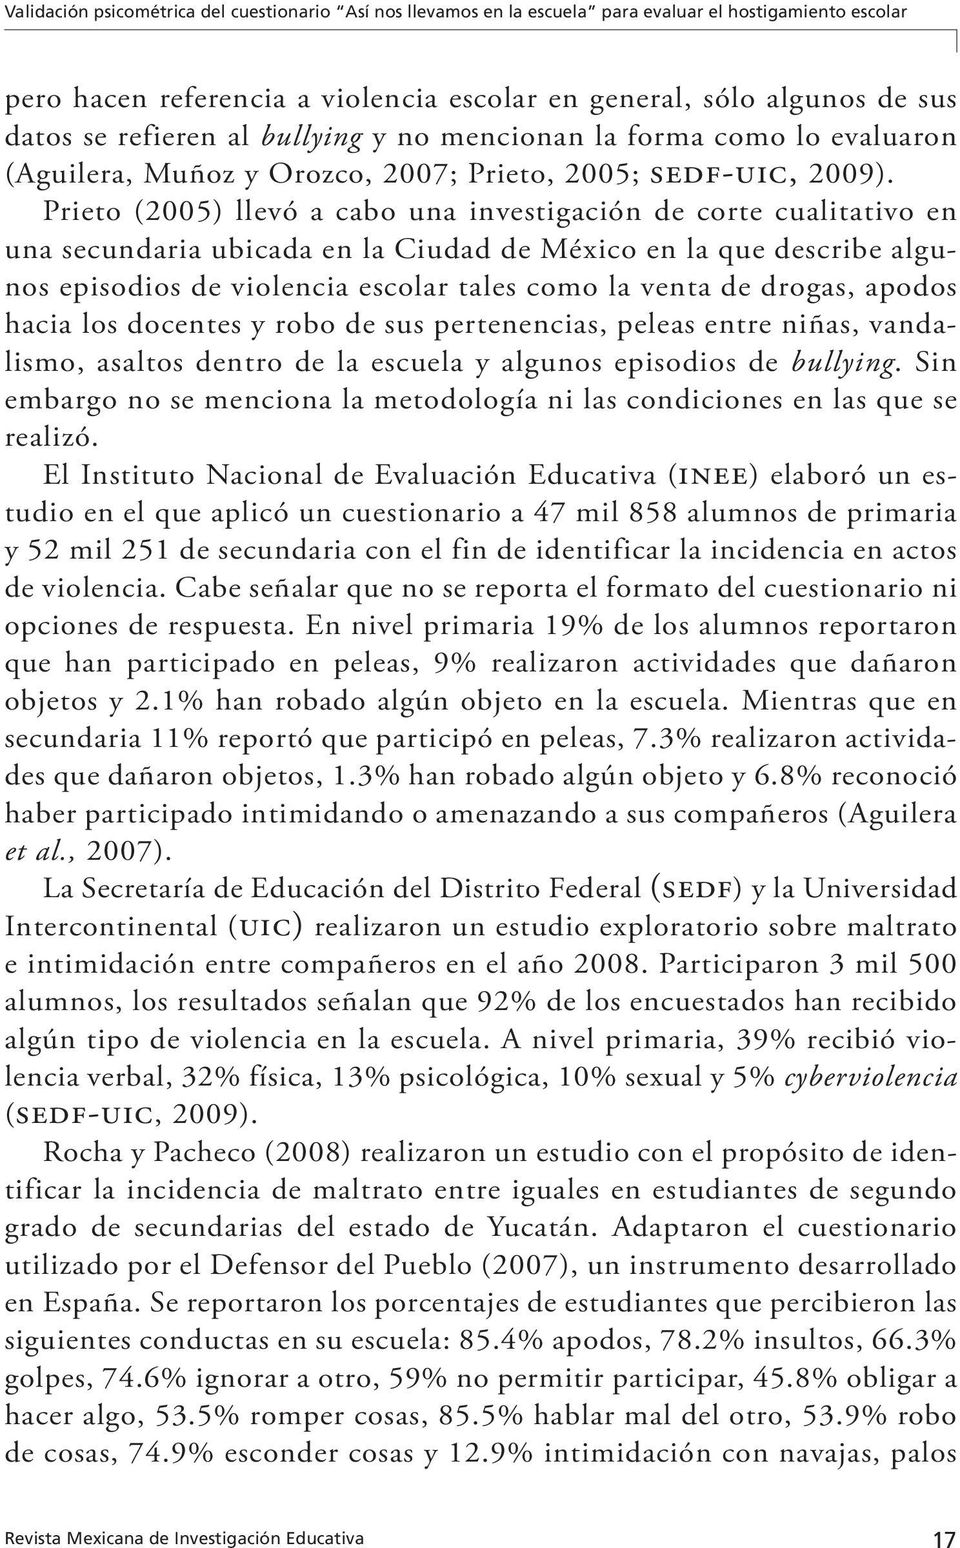 Prieto (2005) llevó a cabo una investigación de corte cualitativo en una secundaria ubicada en la Ciudad de México en la que describe algunos episodios de violencia escolar tales como la venta de